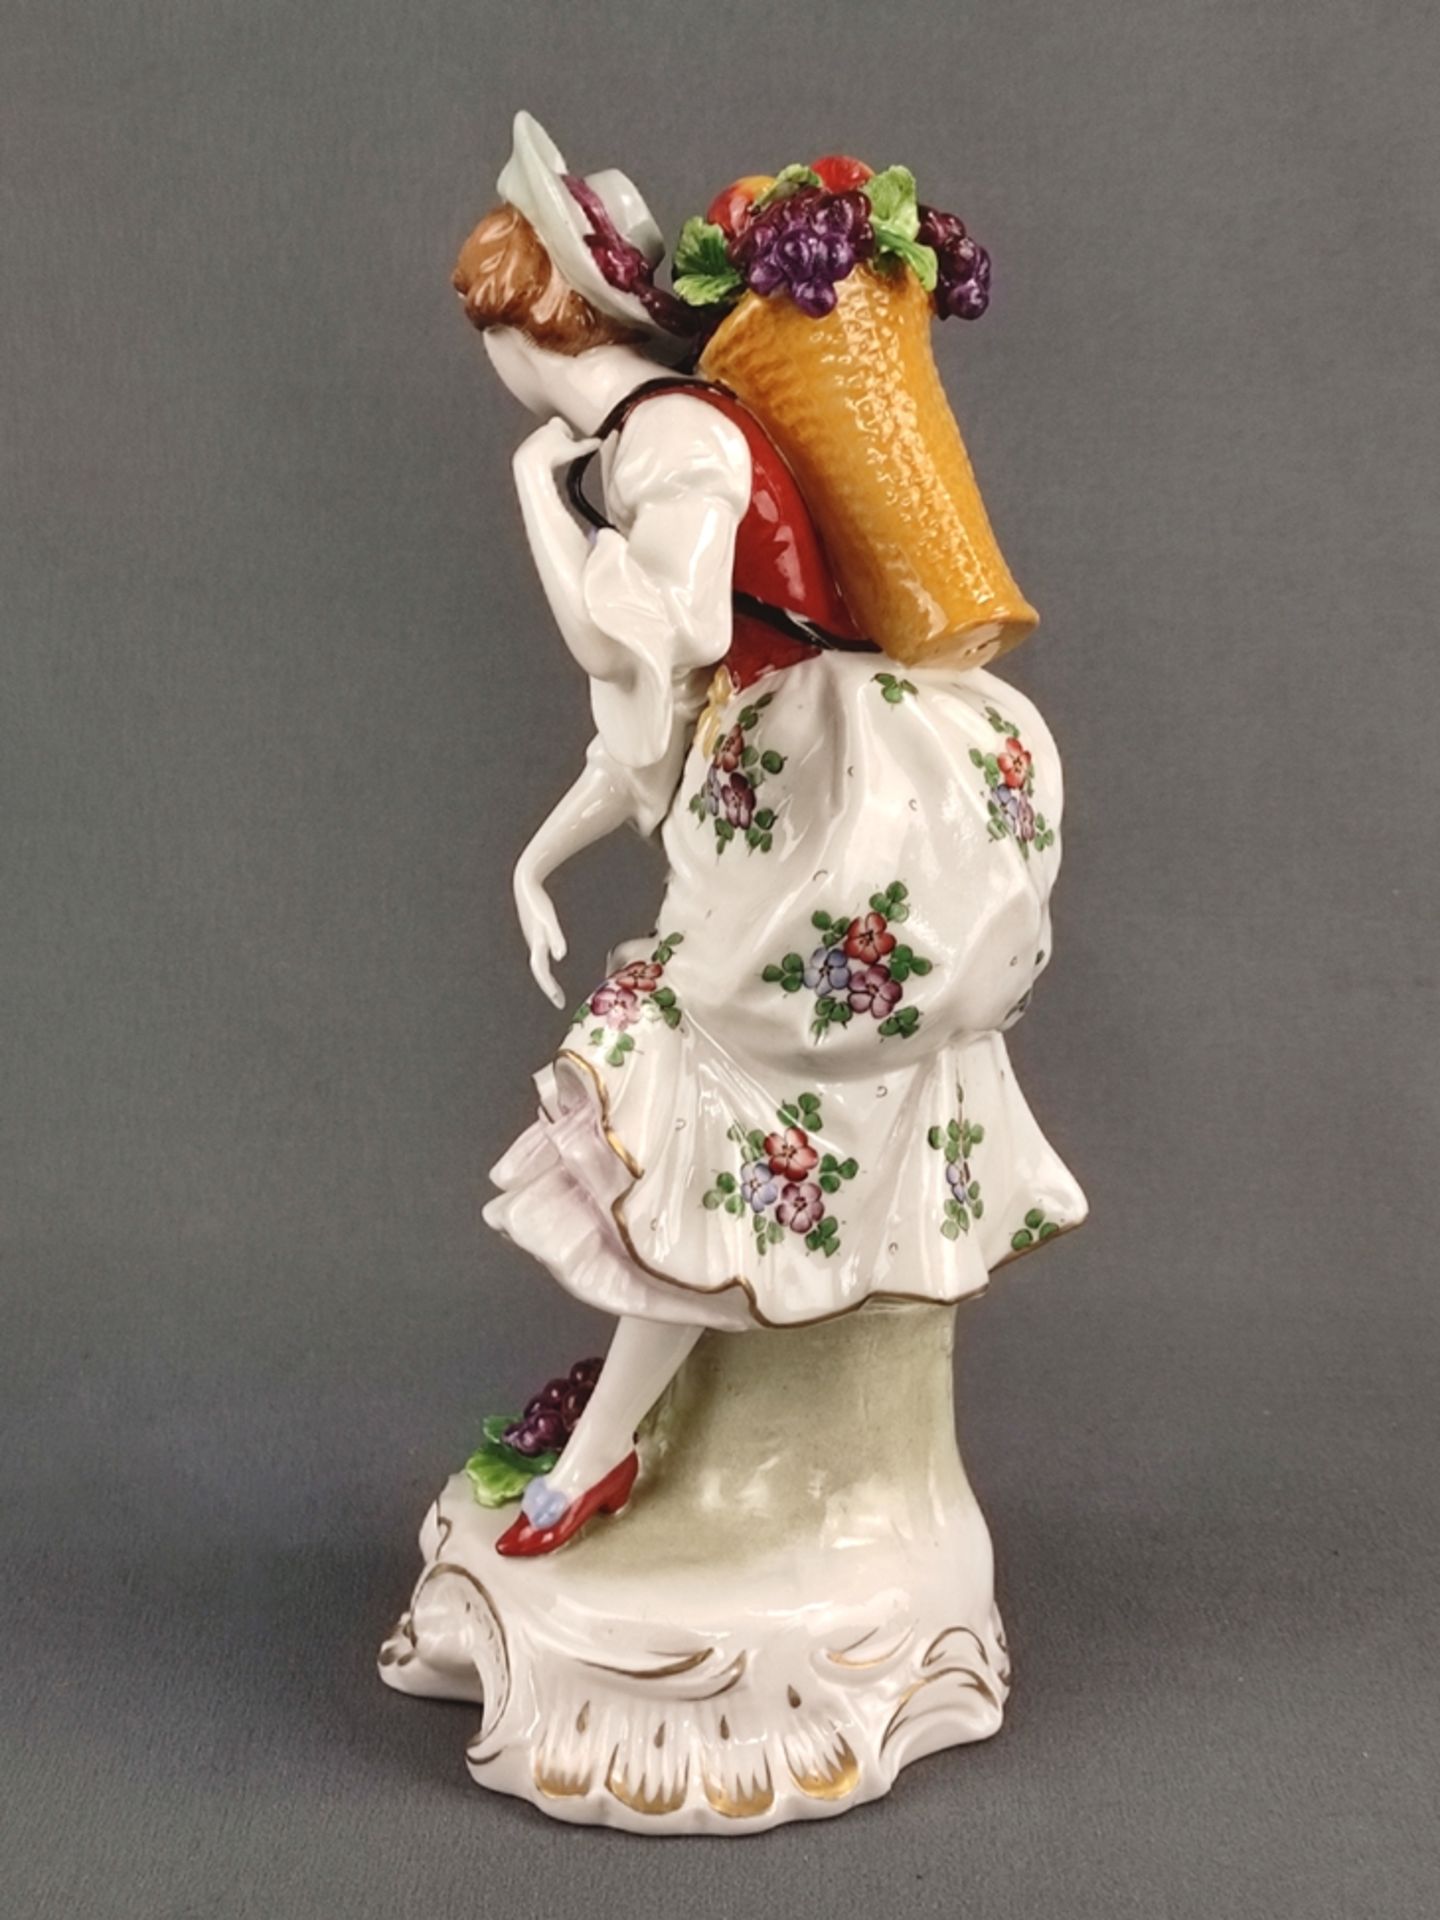 Porzellanfigur "Dame mit Obstkorb", Sitzendorfer Porzellanmanufaktur, 20. Jahrhundert, vollplastisc - Bild 5 aus 6